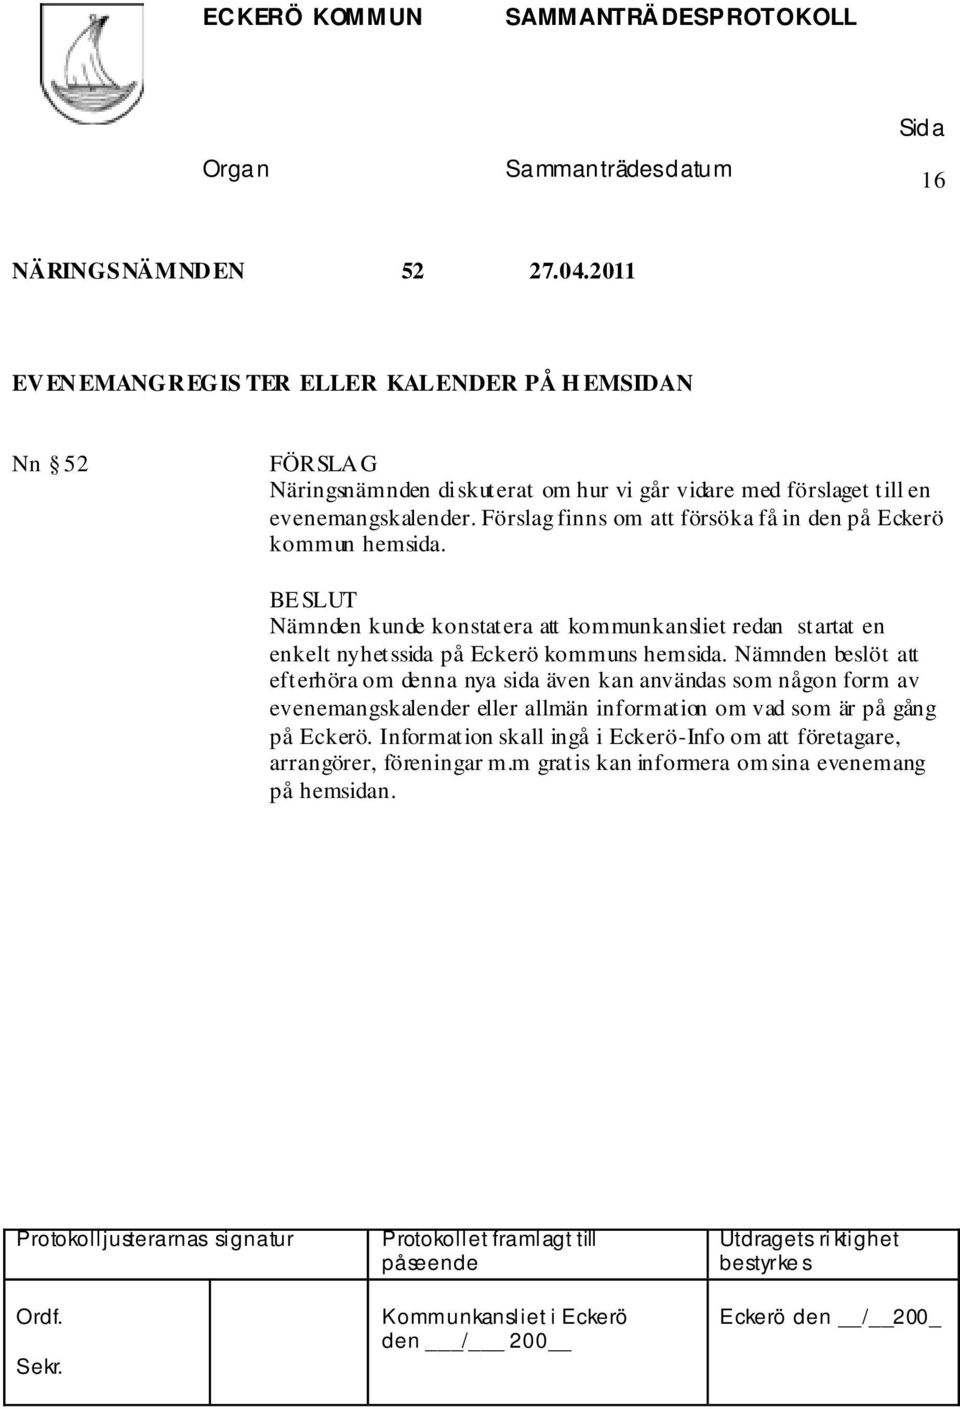 Nämnden kunde konstatera att kommunkansliet redan startat en enkelt nyhetssida på Eckerö kommuns hemsida.